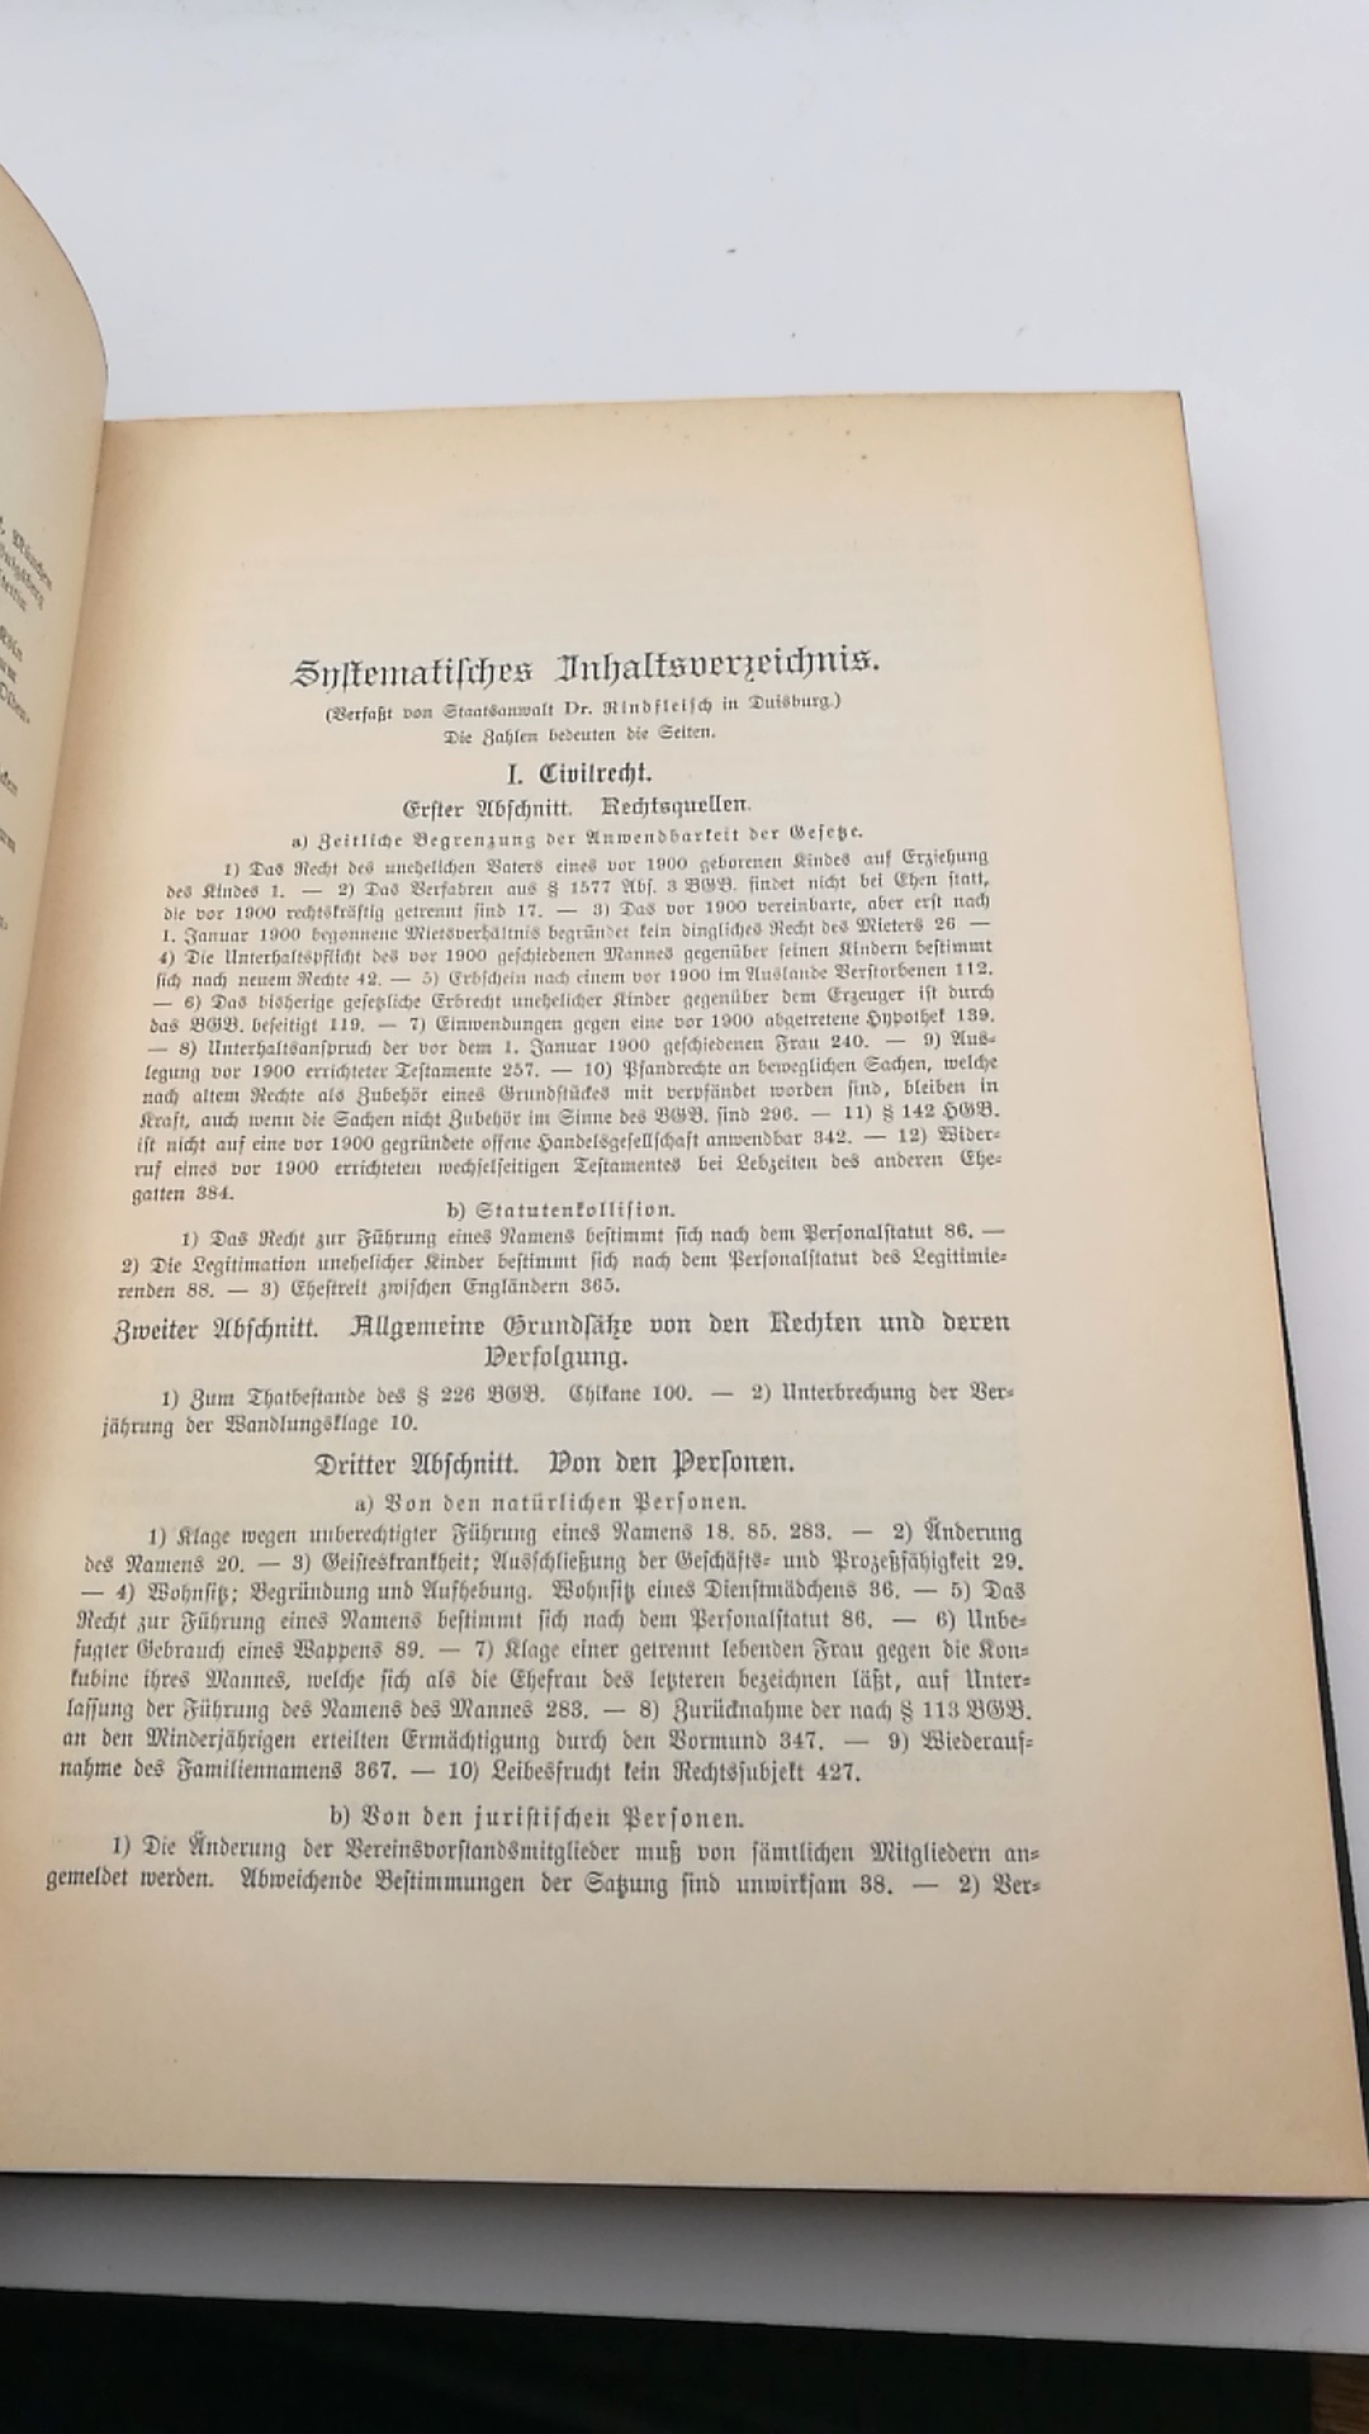 Mugdan / Falkmann, B. / R. (Hrgs.): Die Rechtsprechung der Oberlandesgerichte auf dem Gebiete des Zivilrechts. 3. Band 1901 (Zweites Halbjahr)